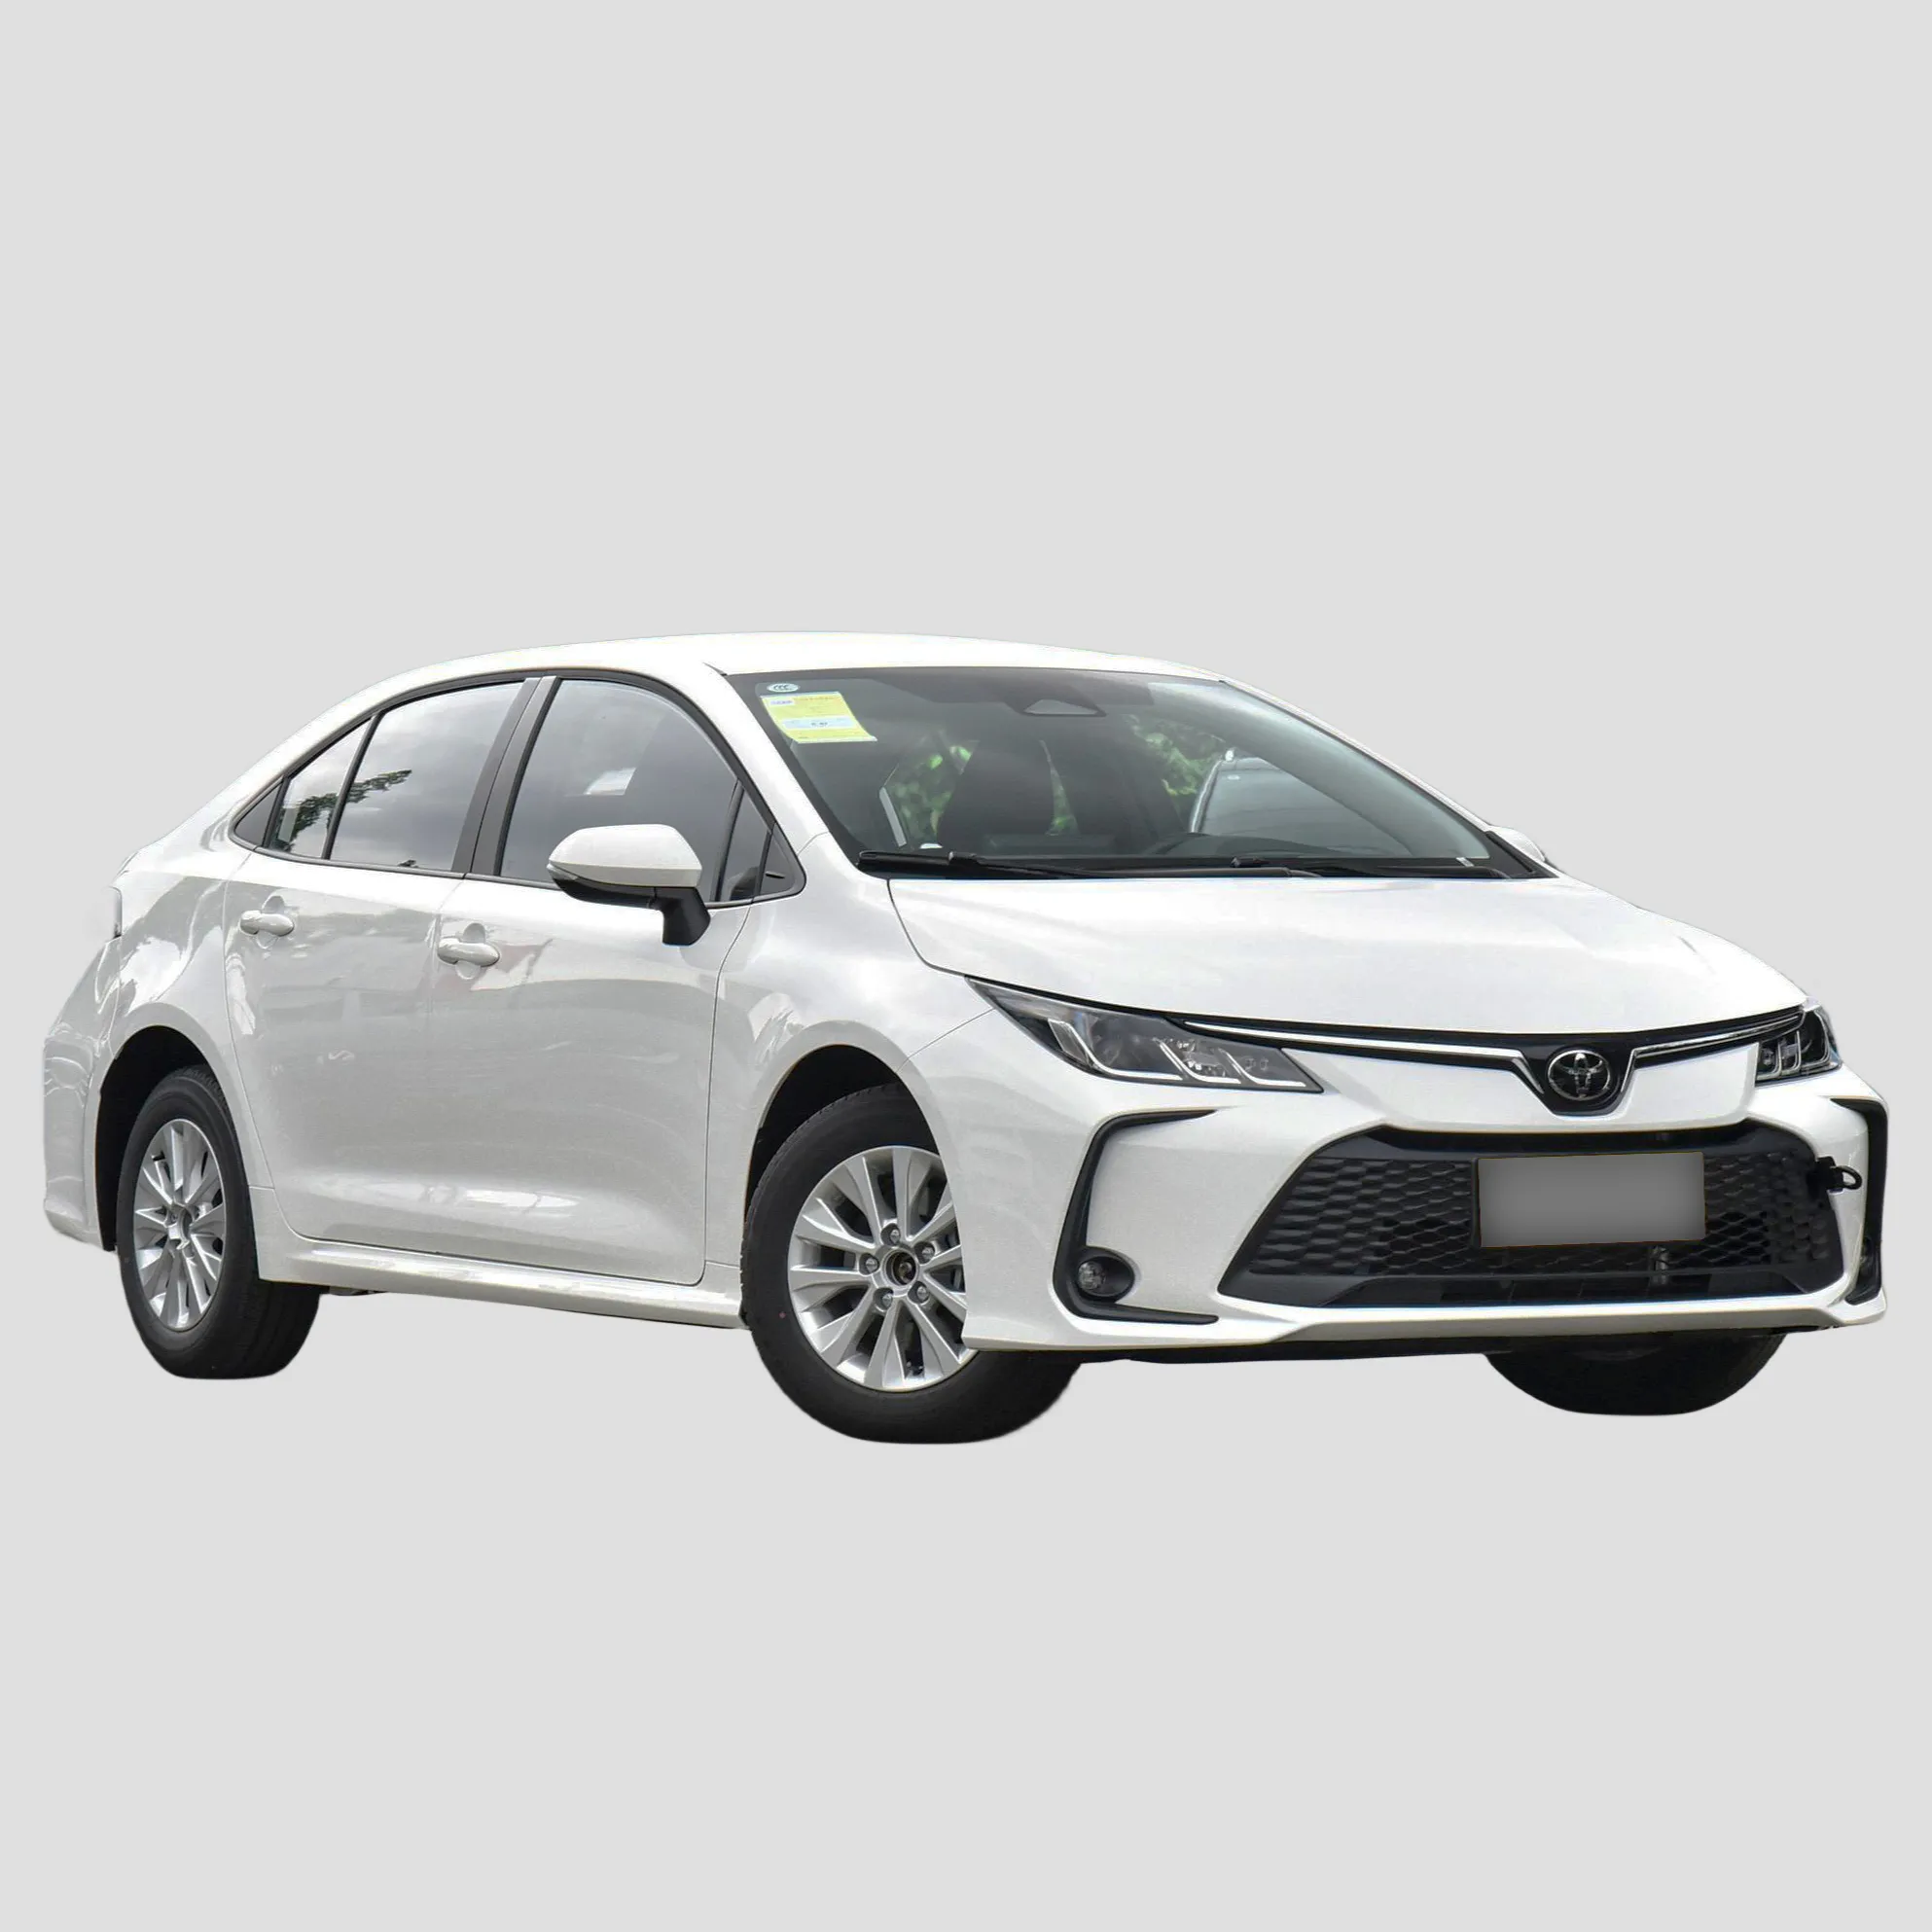 Toyota Corolla 1.5L sedán de aspiración natural nuevo y usado 2022 2023 China precio barato vehículos Toyota Corolla para la venta